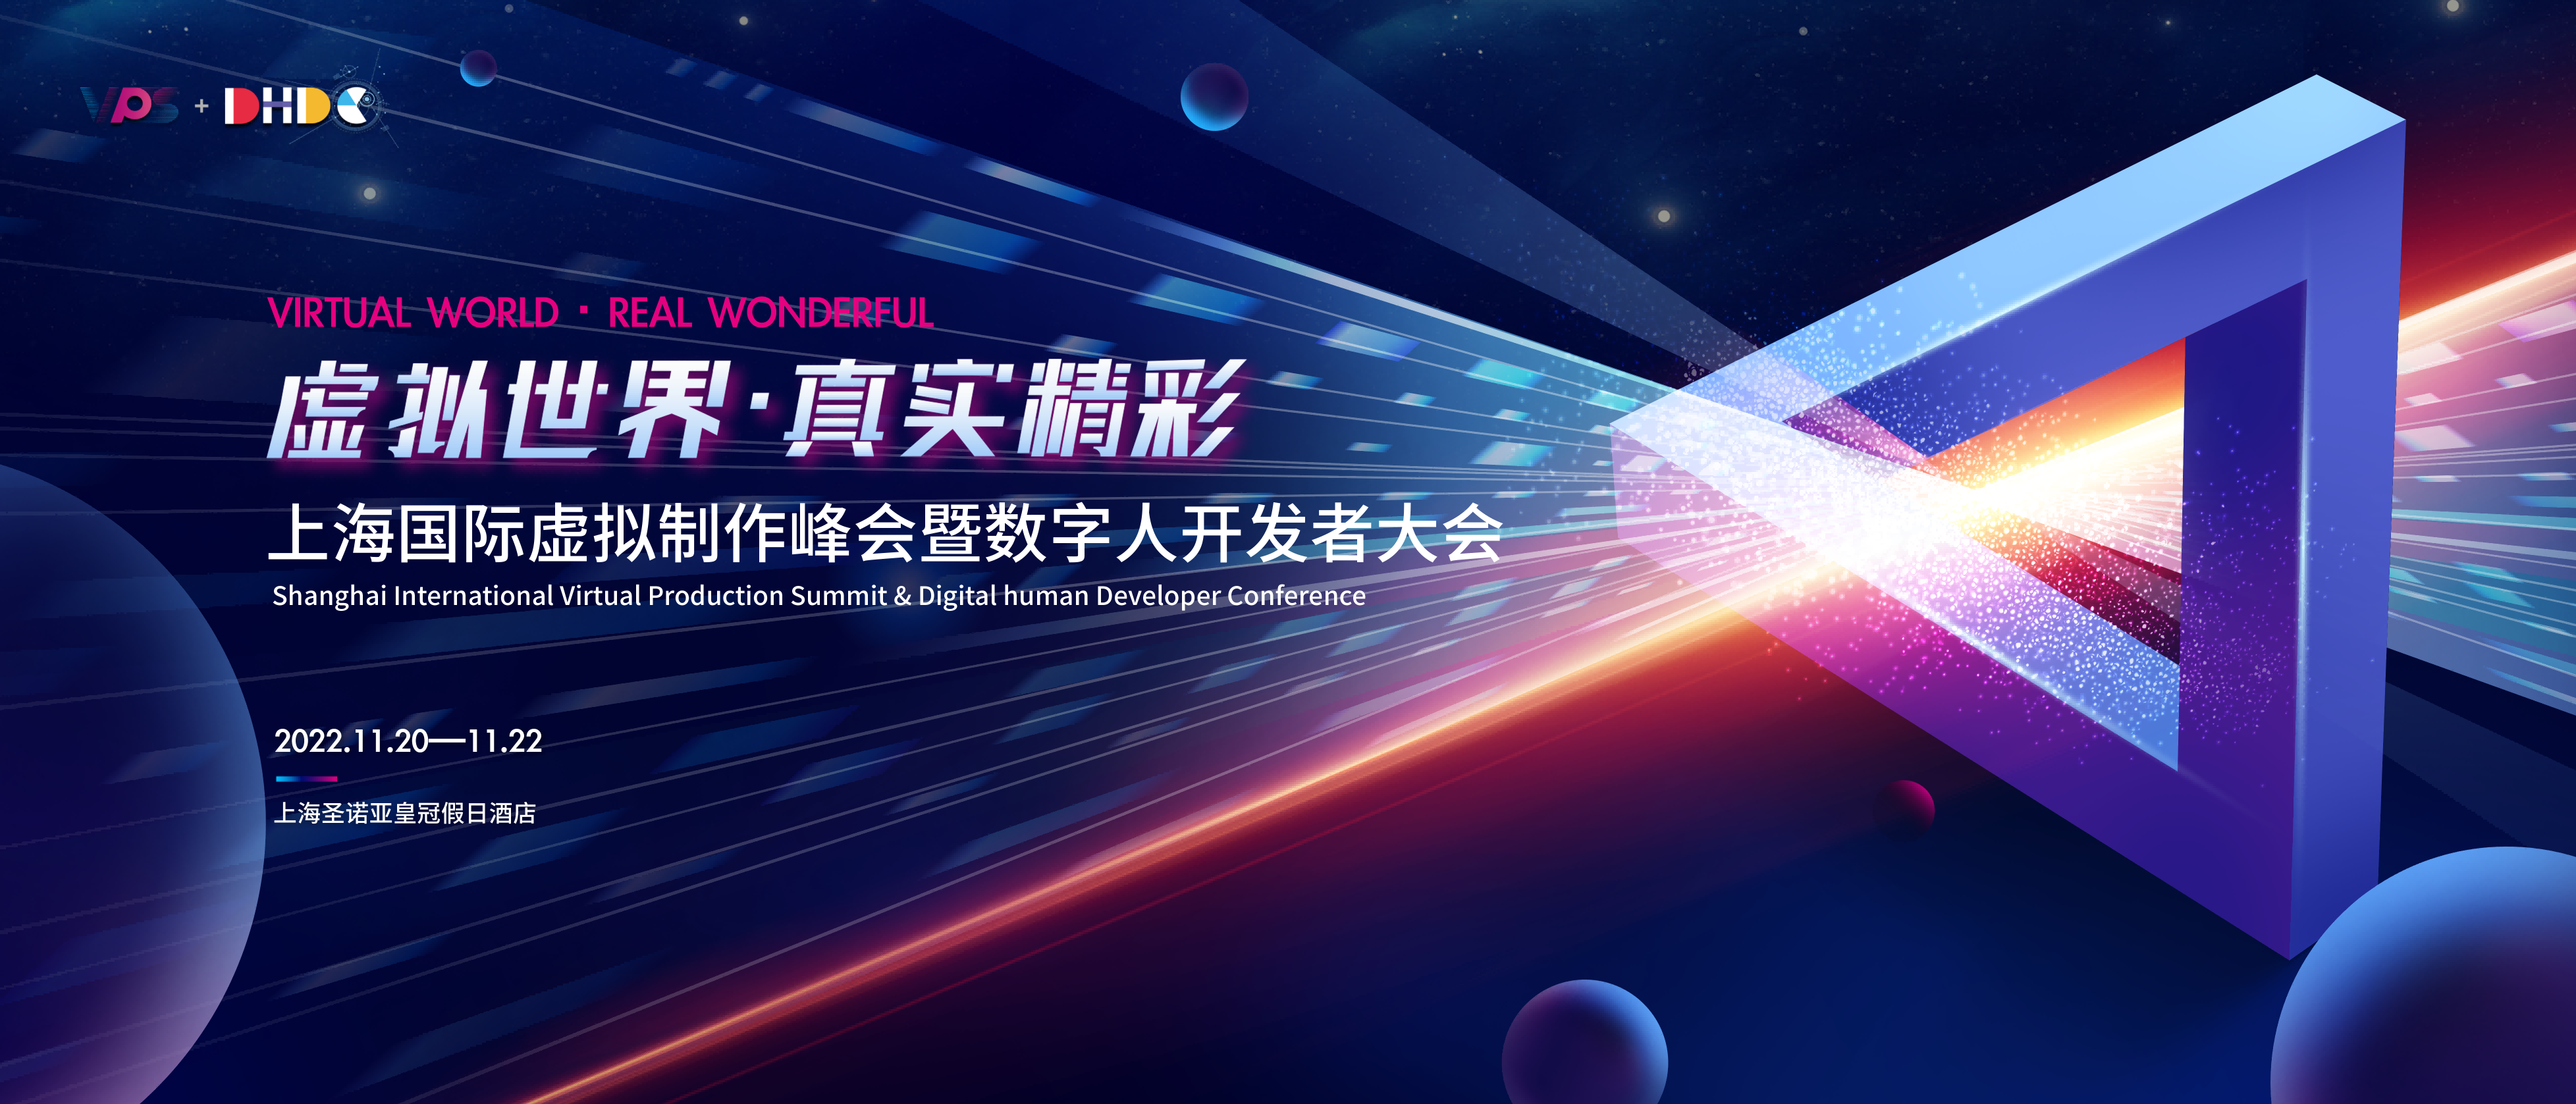 虚拟世界·真实精彩！上海国际虚拟制作峰会暨数字人开发者大会11月上海启幕